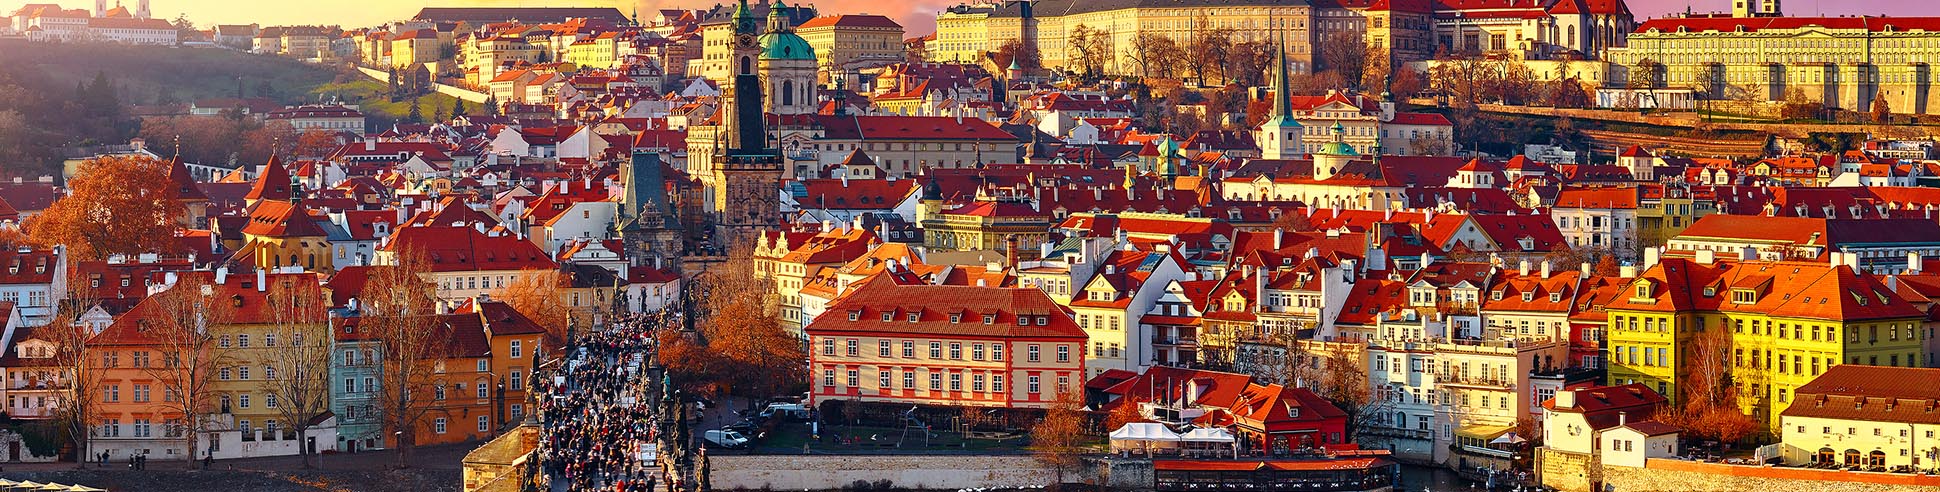 Blick auf das Stadtzentrum von Prag